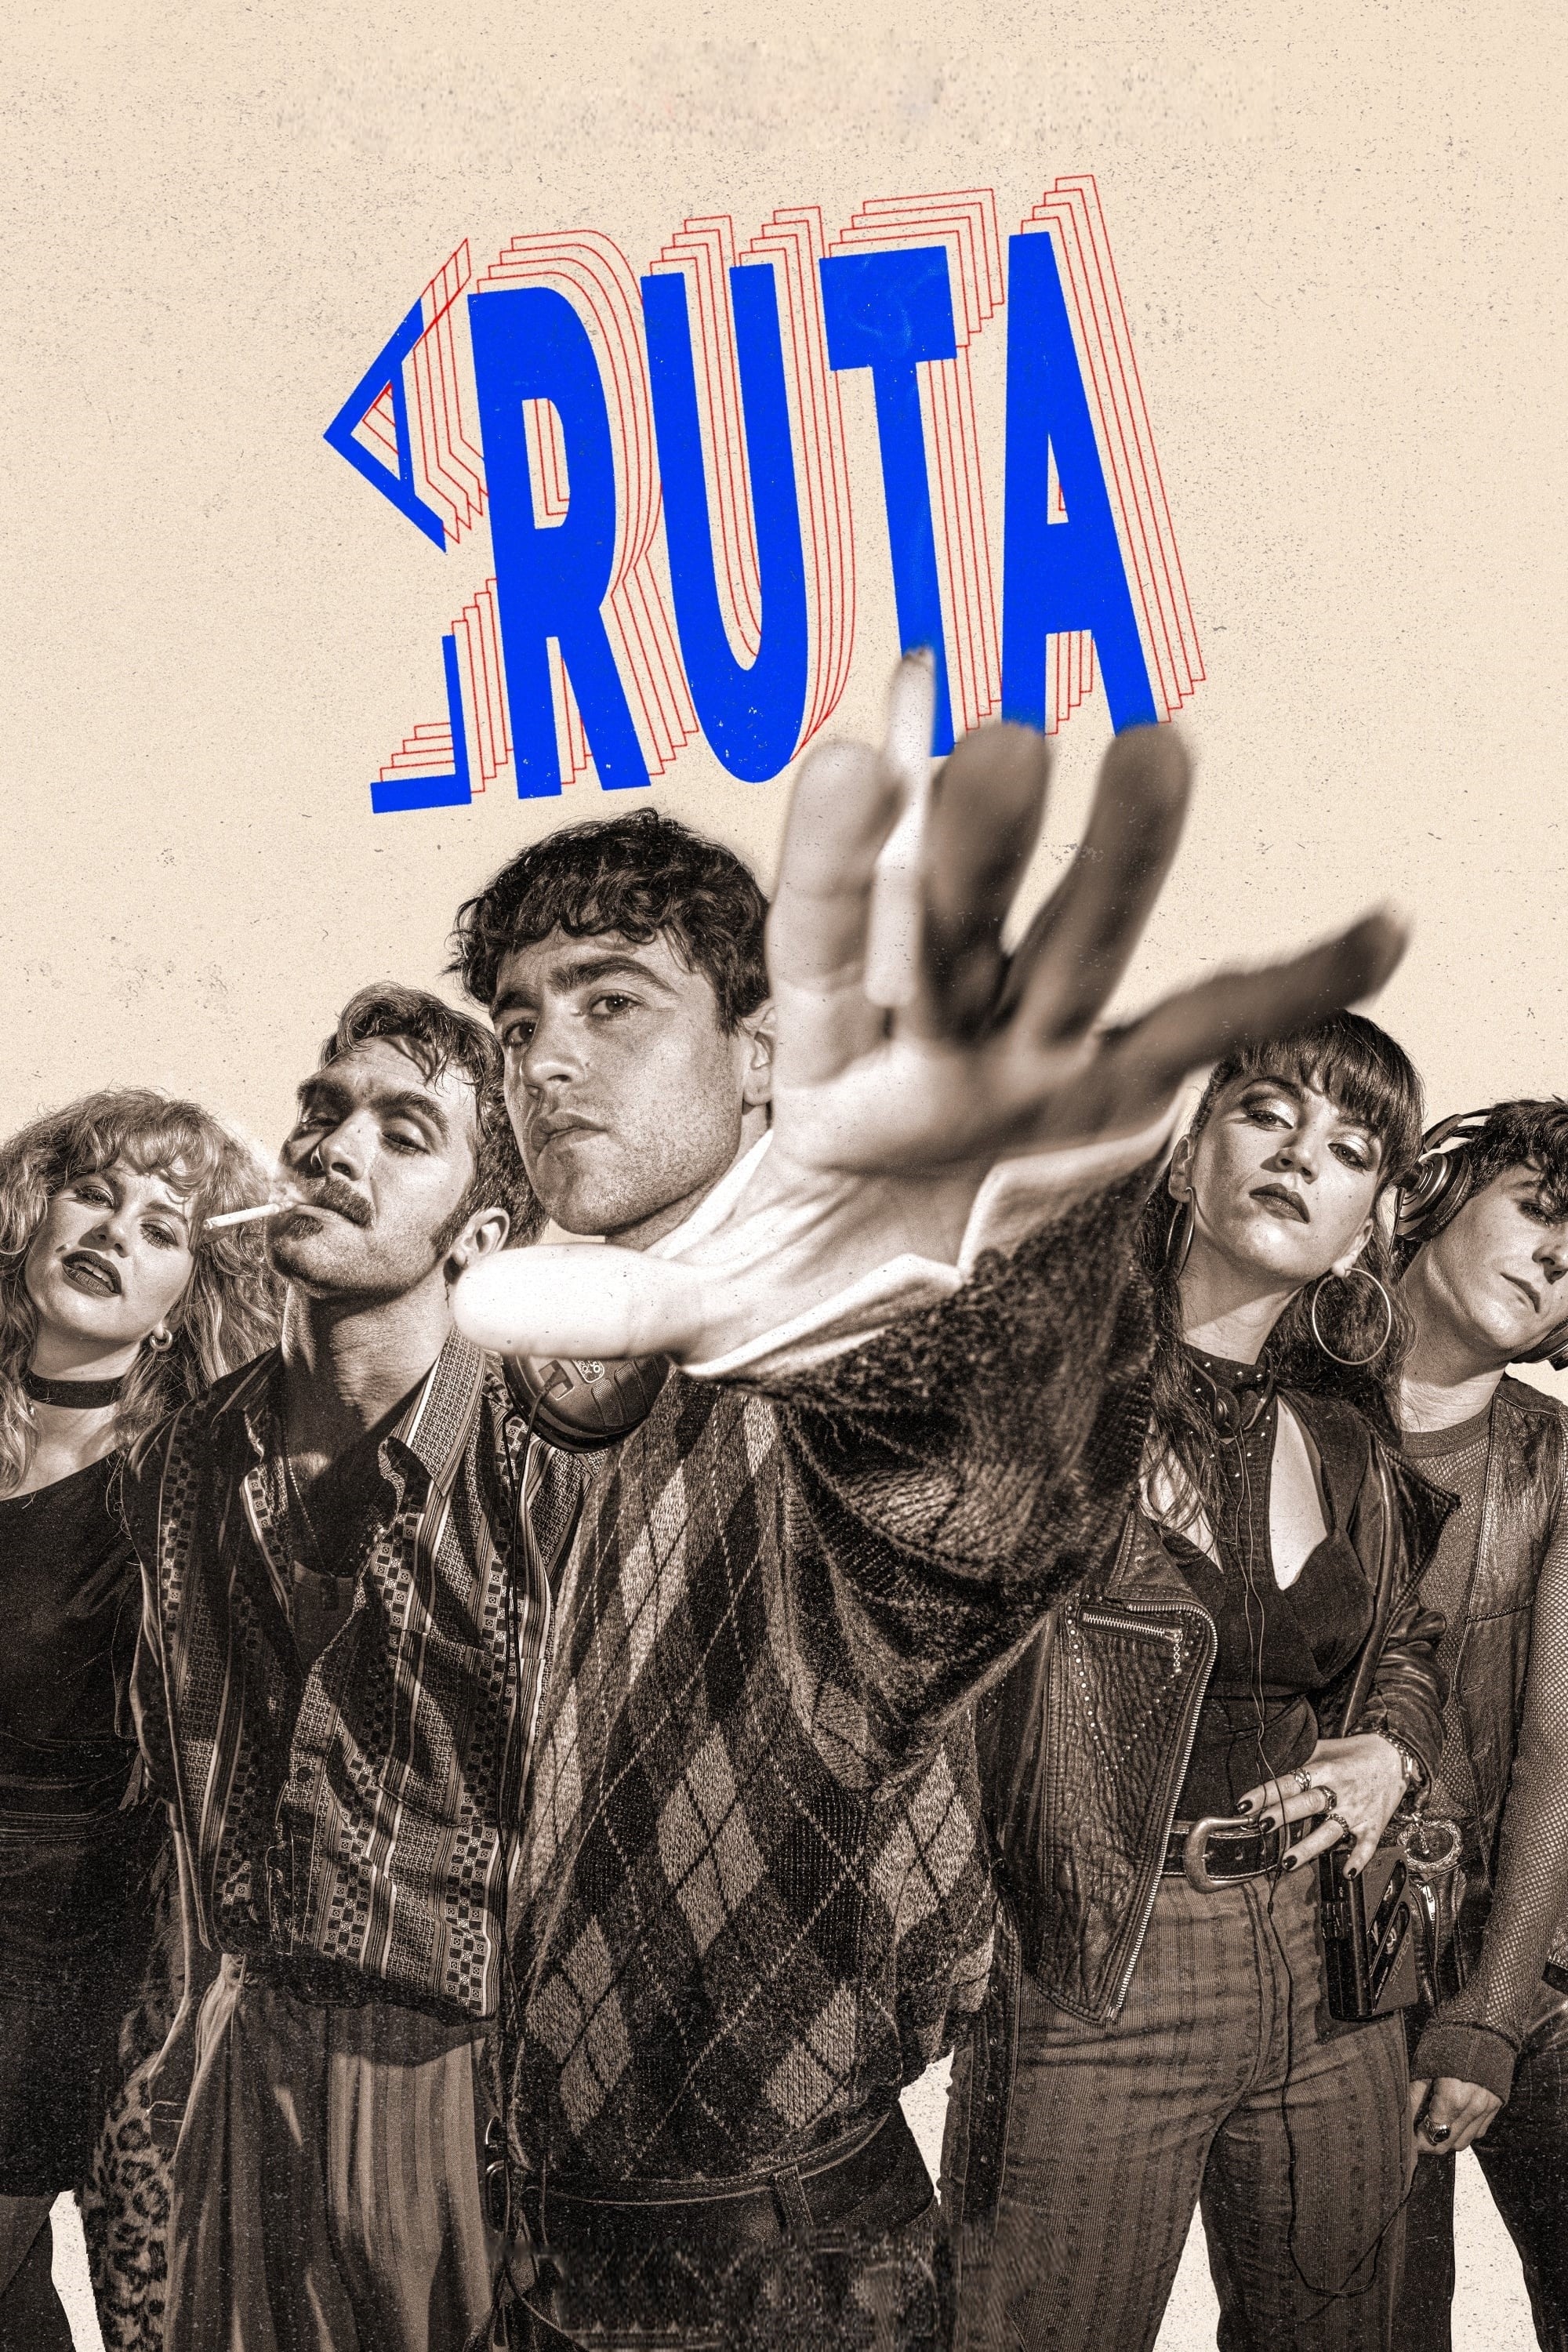 La Ruta TV Shows About Period Drama